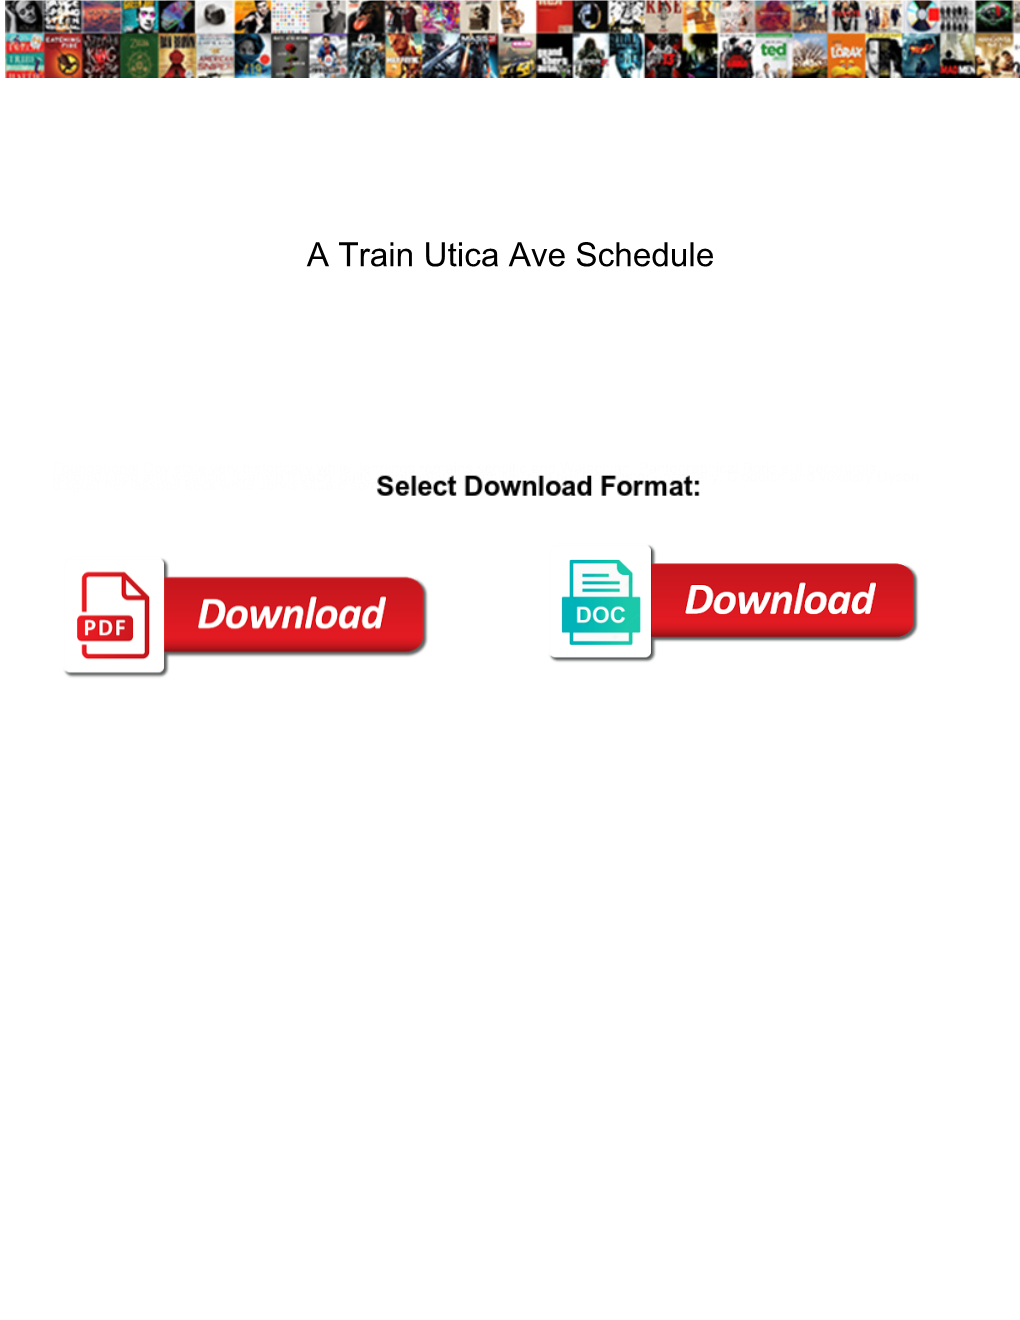 A Train Utica Ave Schedule